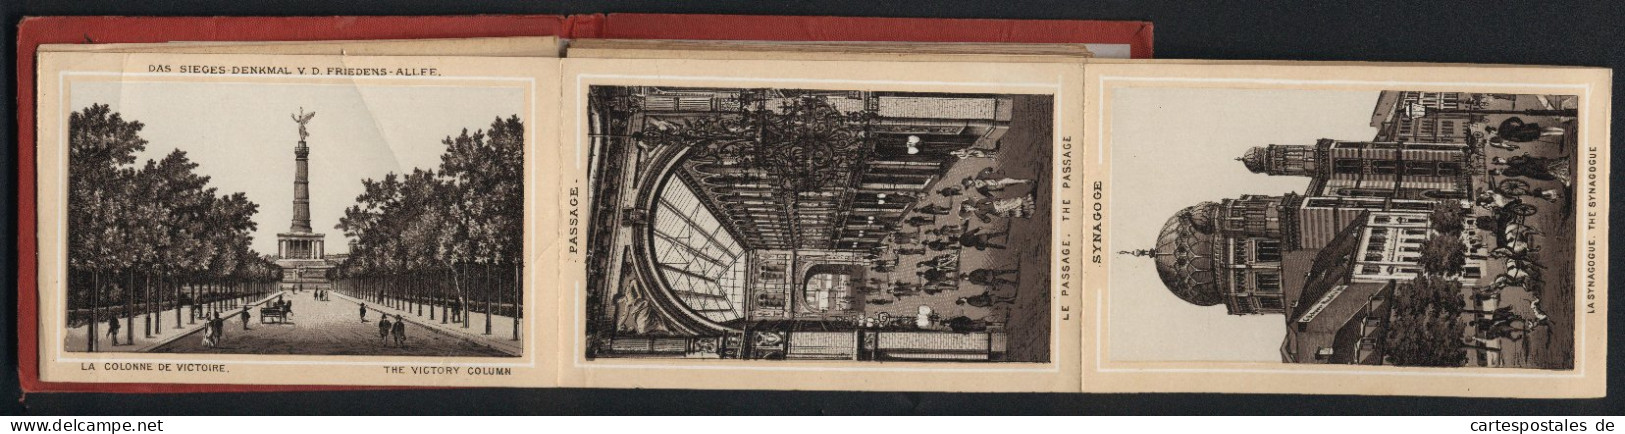 Leporello-Album Berlin Mit 25 Lithographie-Ansichten, Synagoge, Mausoleum, Flora Charlottenburg, Bahnhof Friedrichstra  - Lithographies